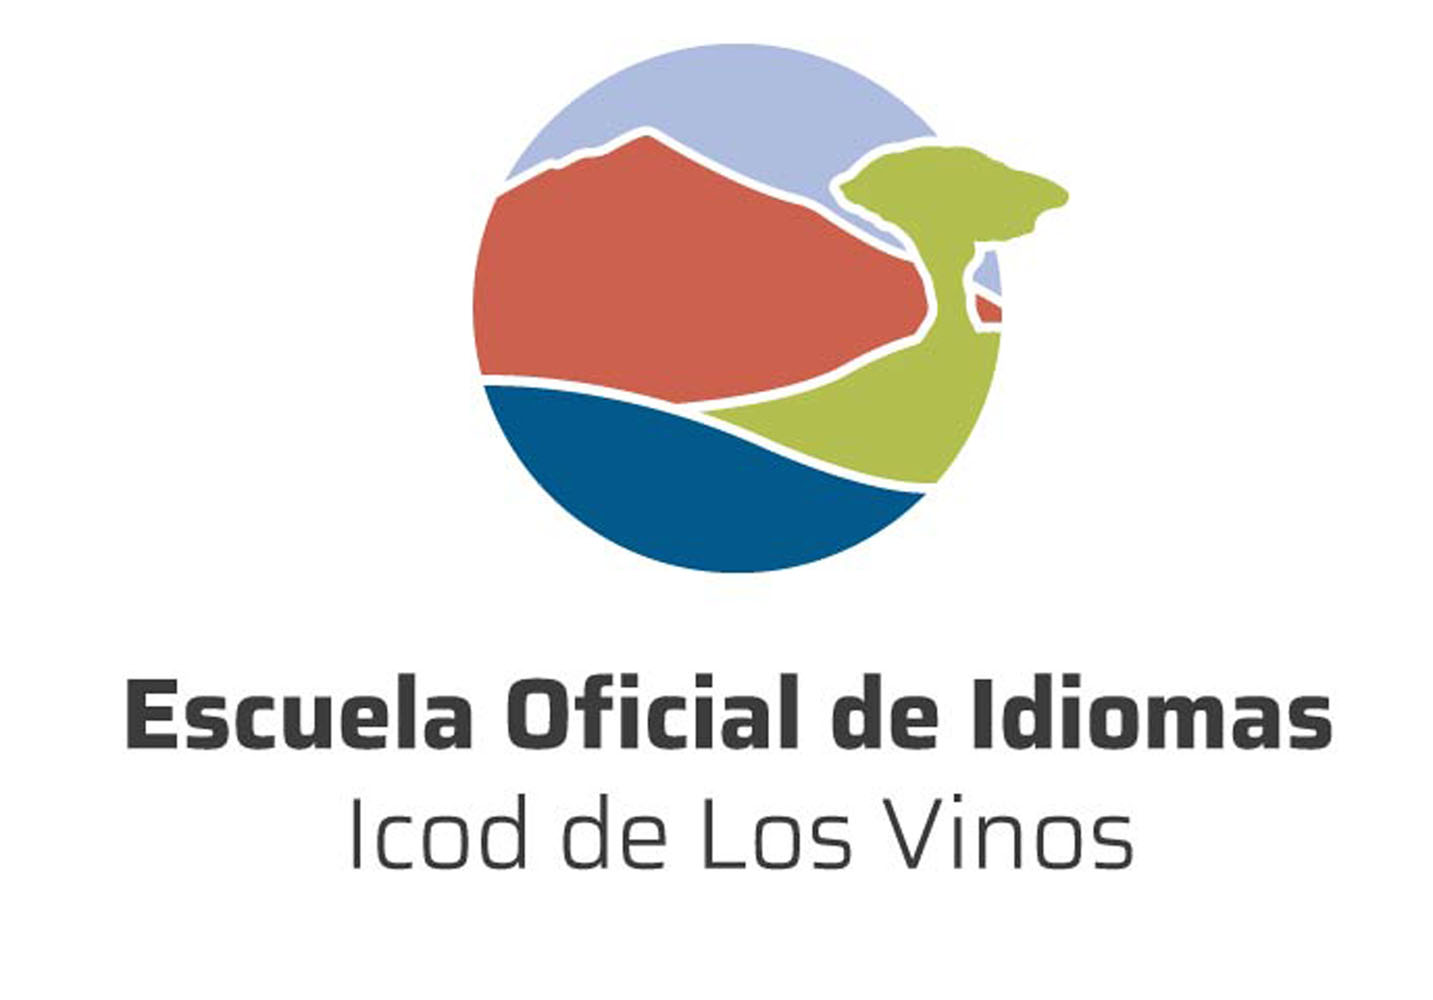 Escuela-Oficial-de-Idiomas-Icod-logo